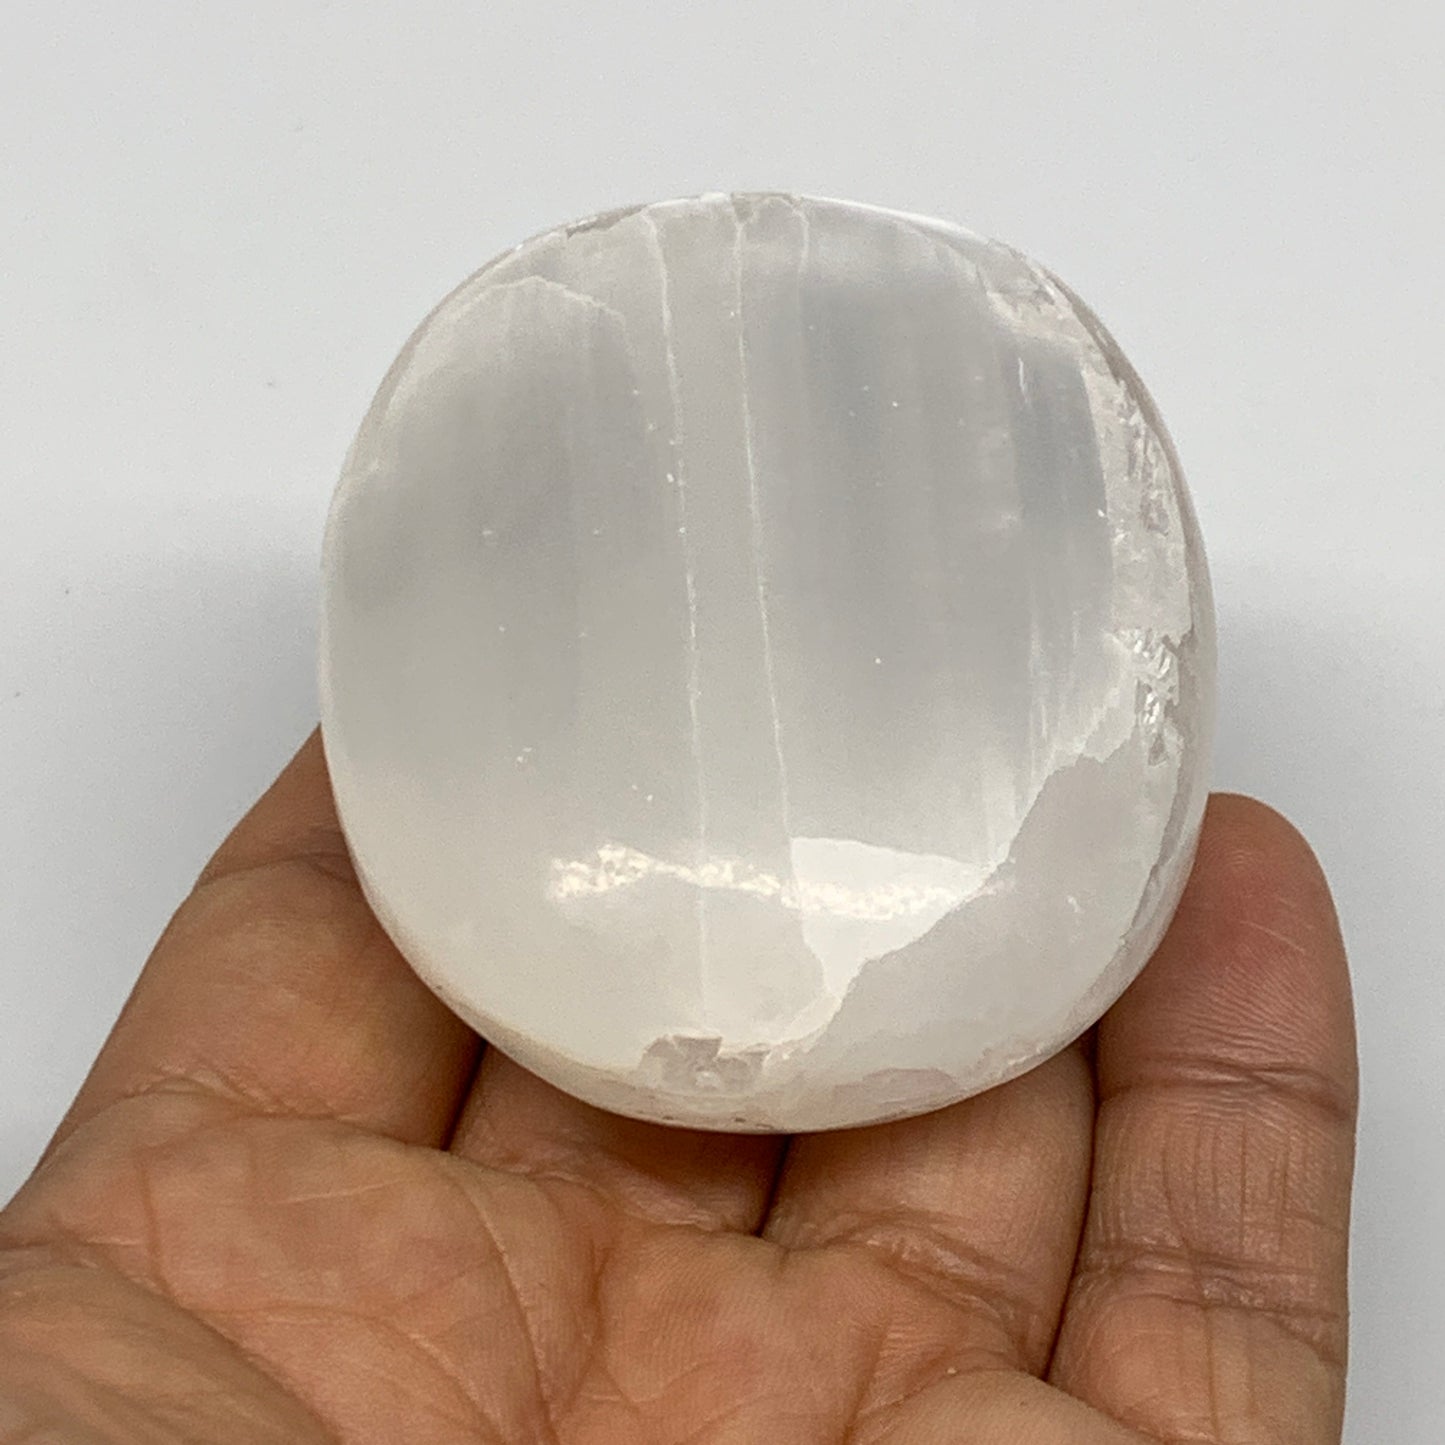 122g, 2.5"x2"x1", White Satin Spar (Selenite) Palmstone Crystal Gypsum, B22583